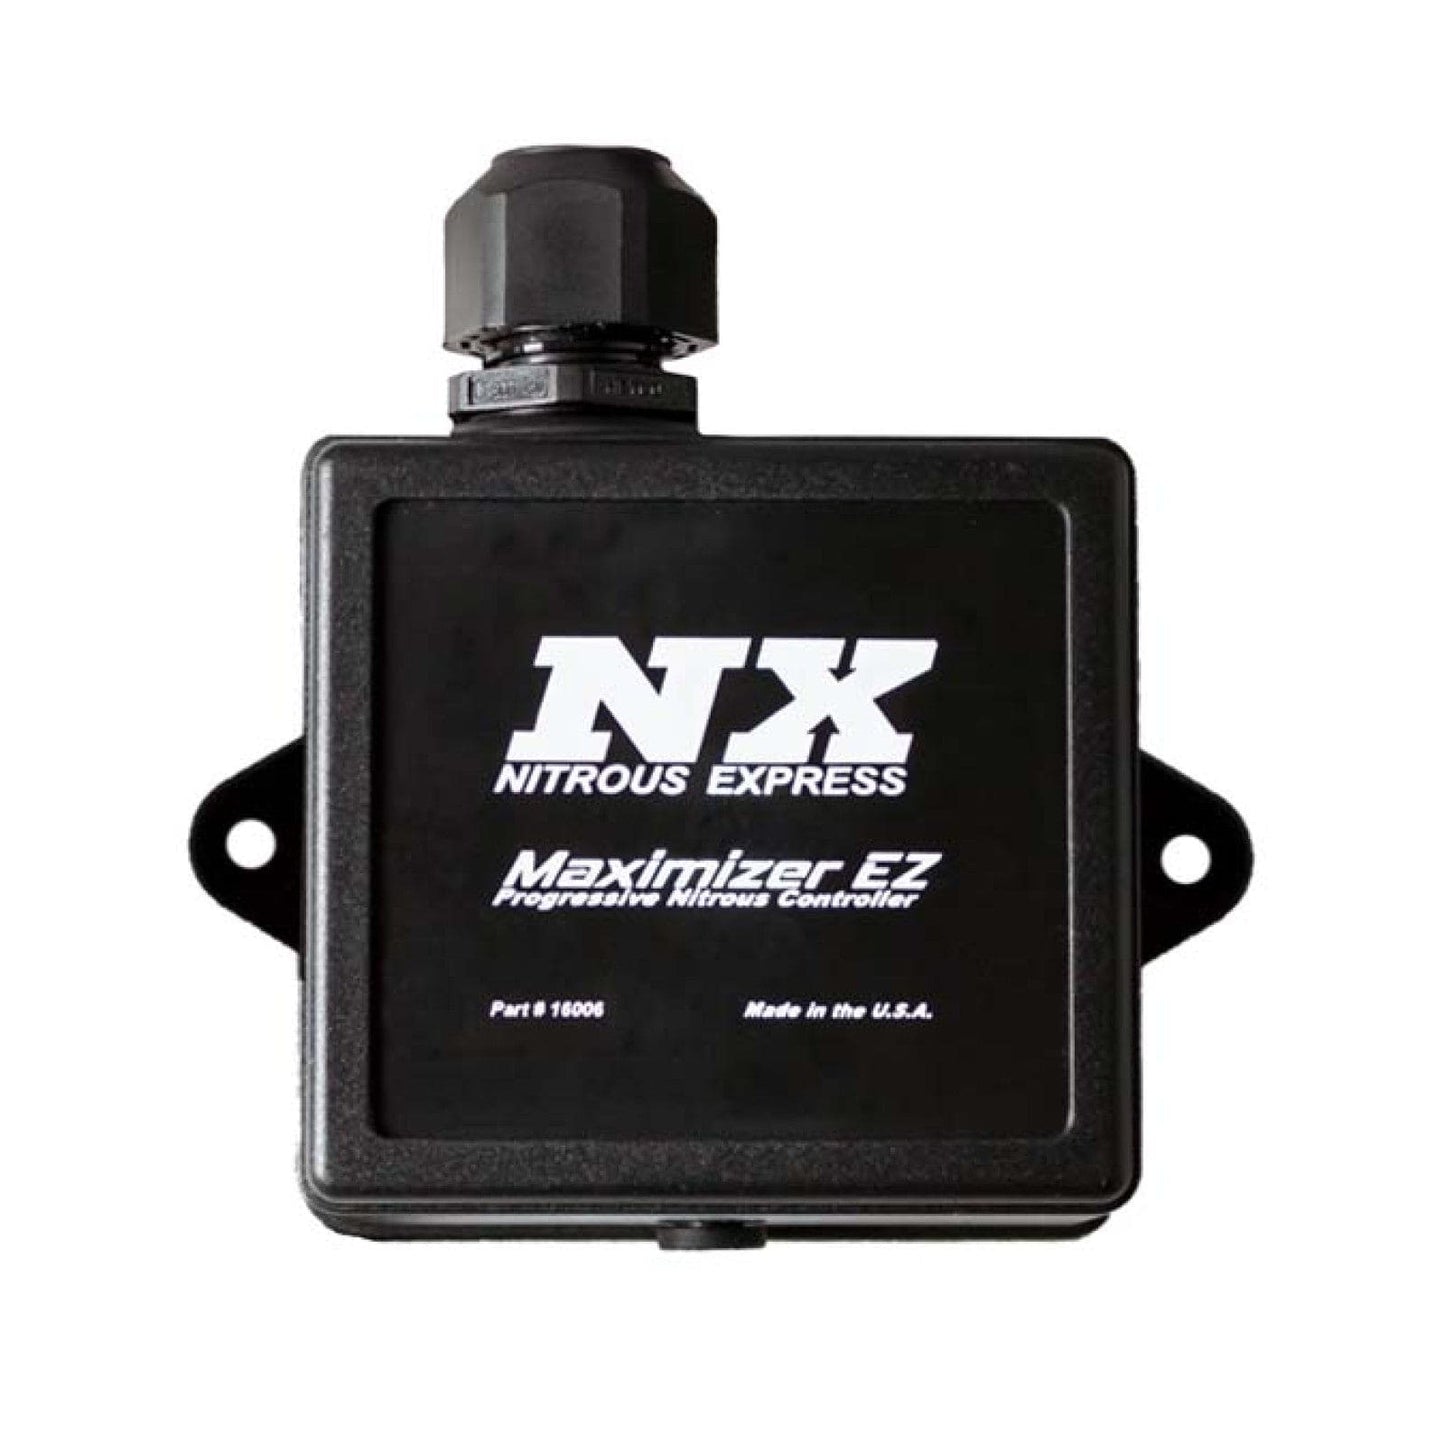 Nitrous Express Maximizer Ez Progressive Nitrous Controller - Rico's Garage